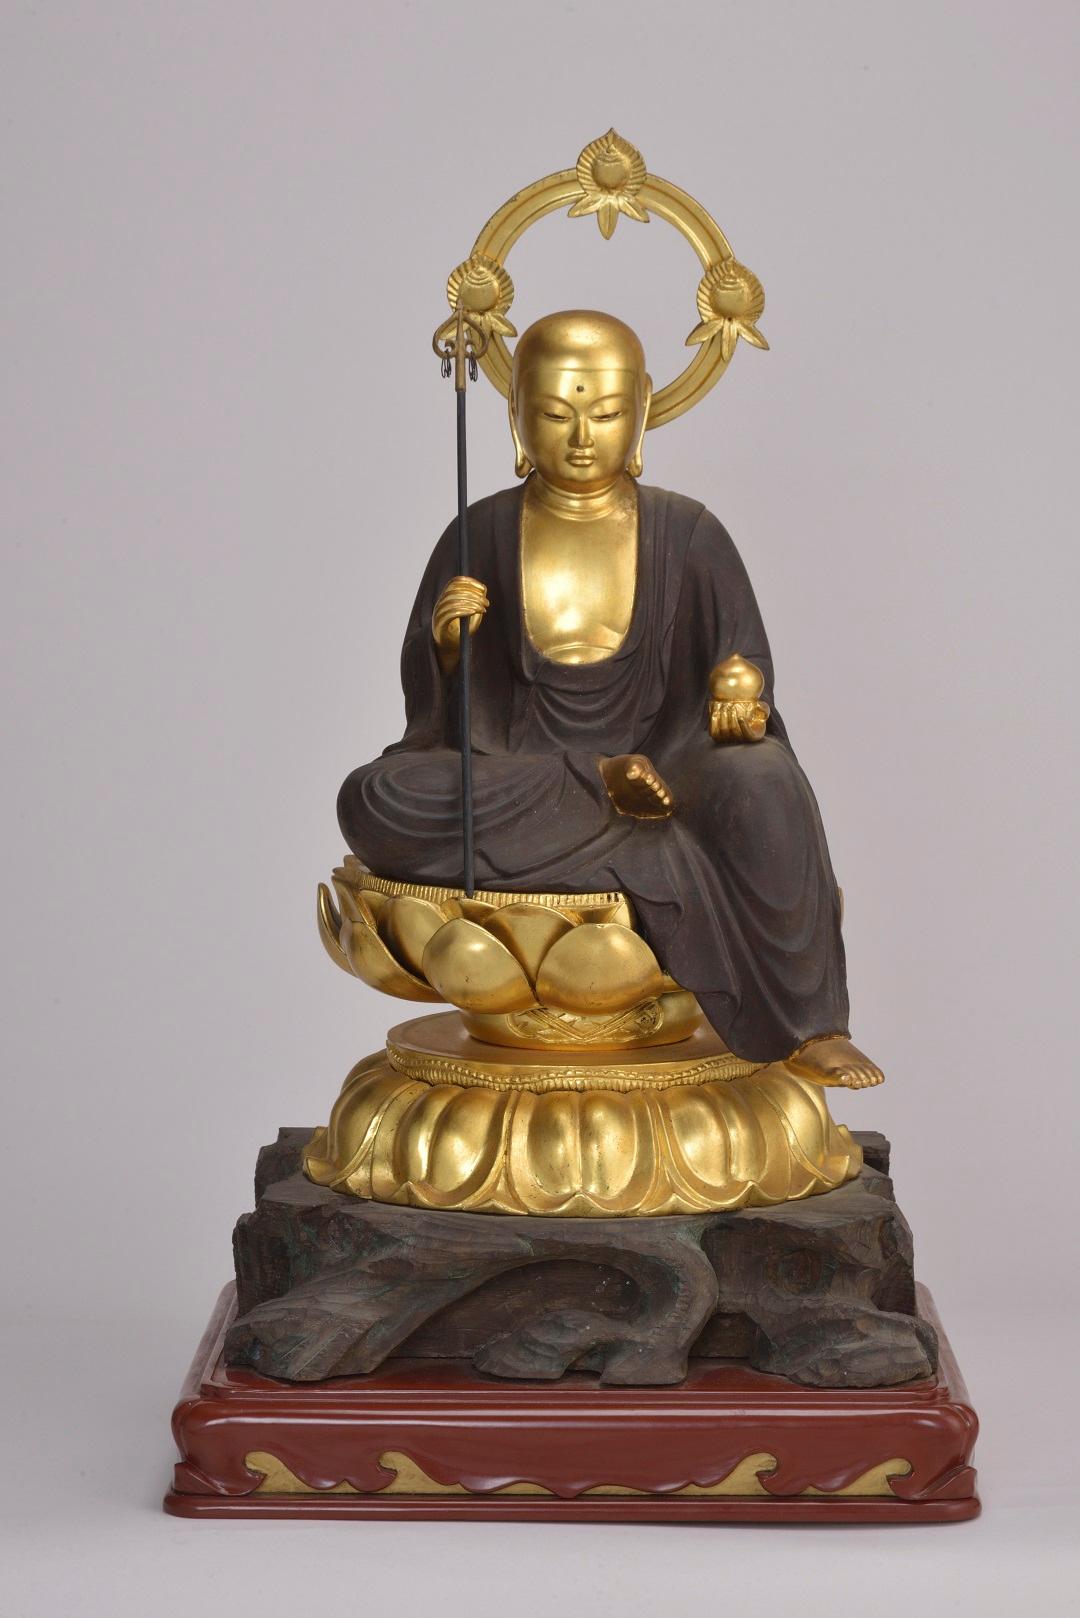 黄金色の仏像が蓮の台座に座り、左手に宝珠、右手に錫杖を持っている写真